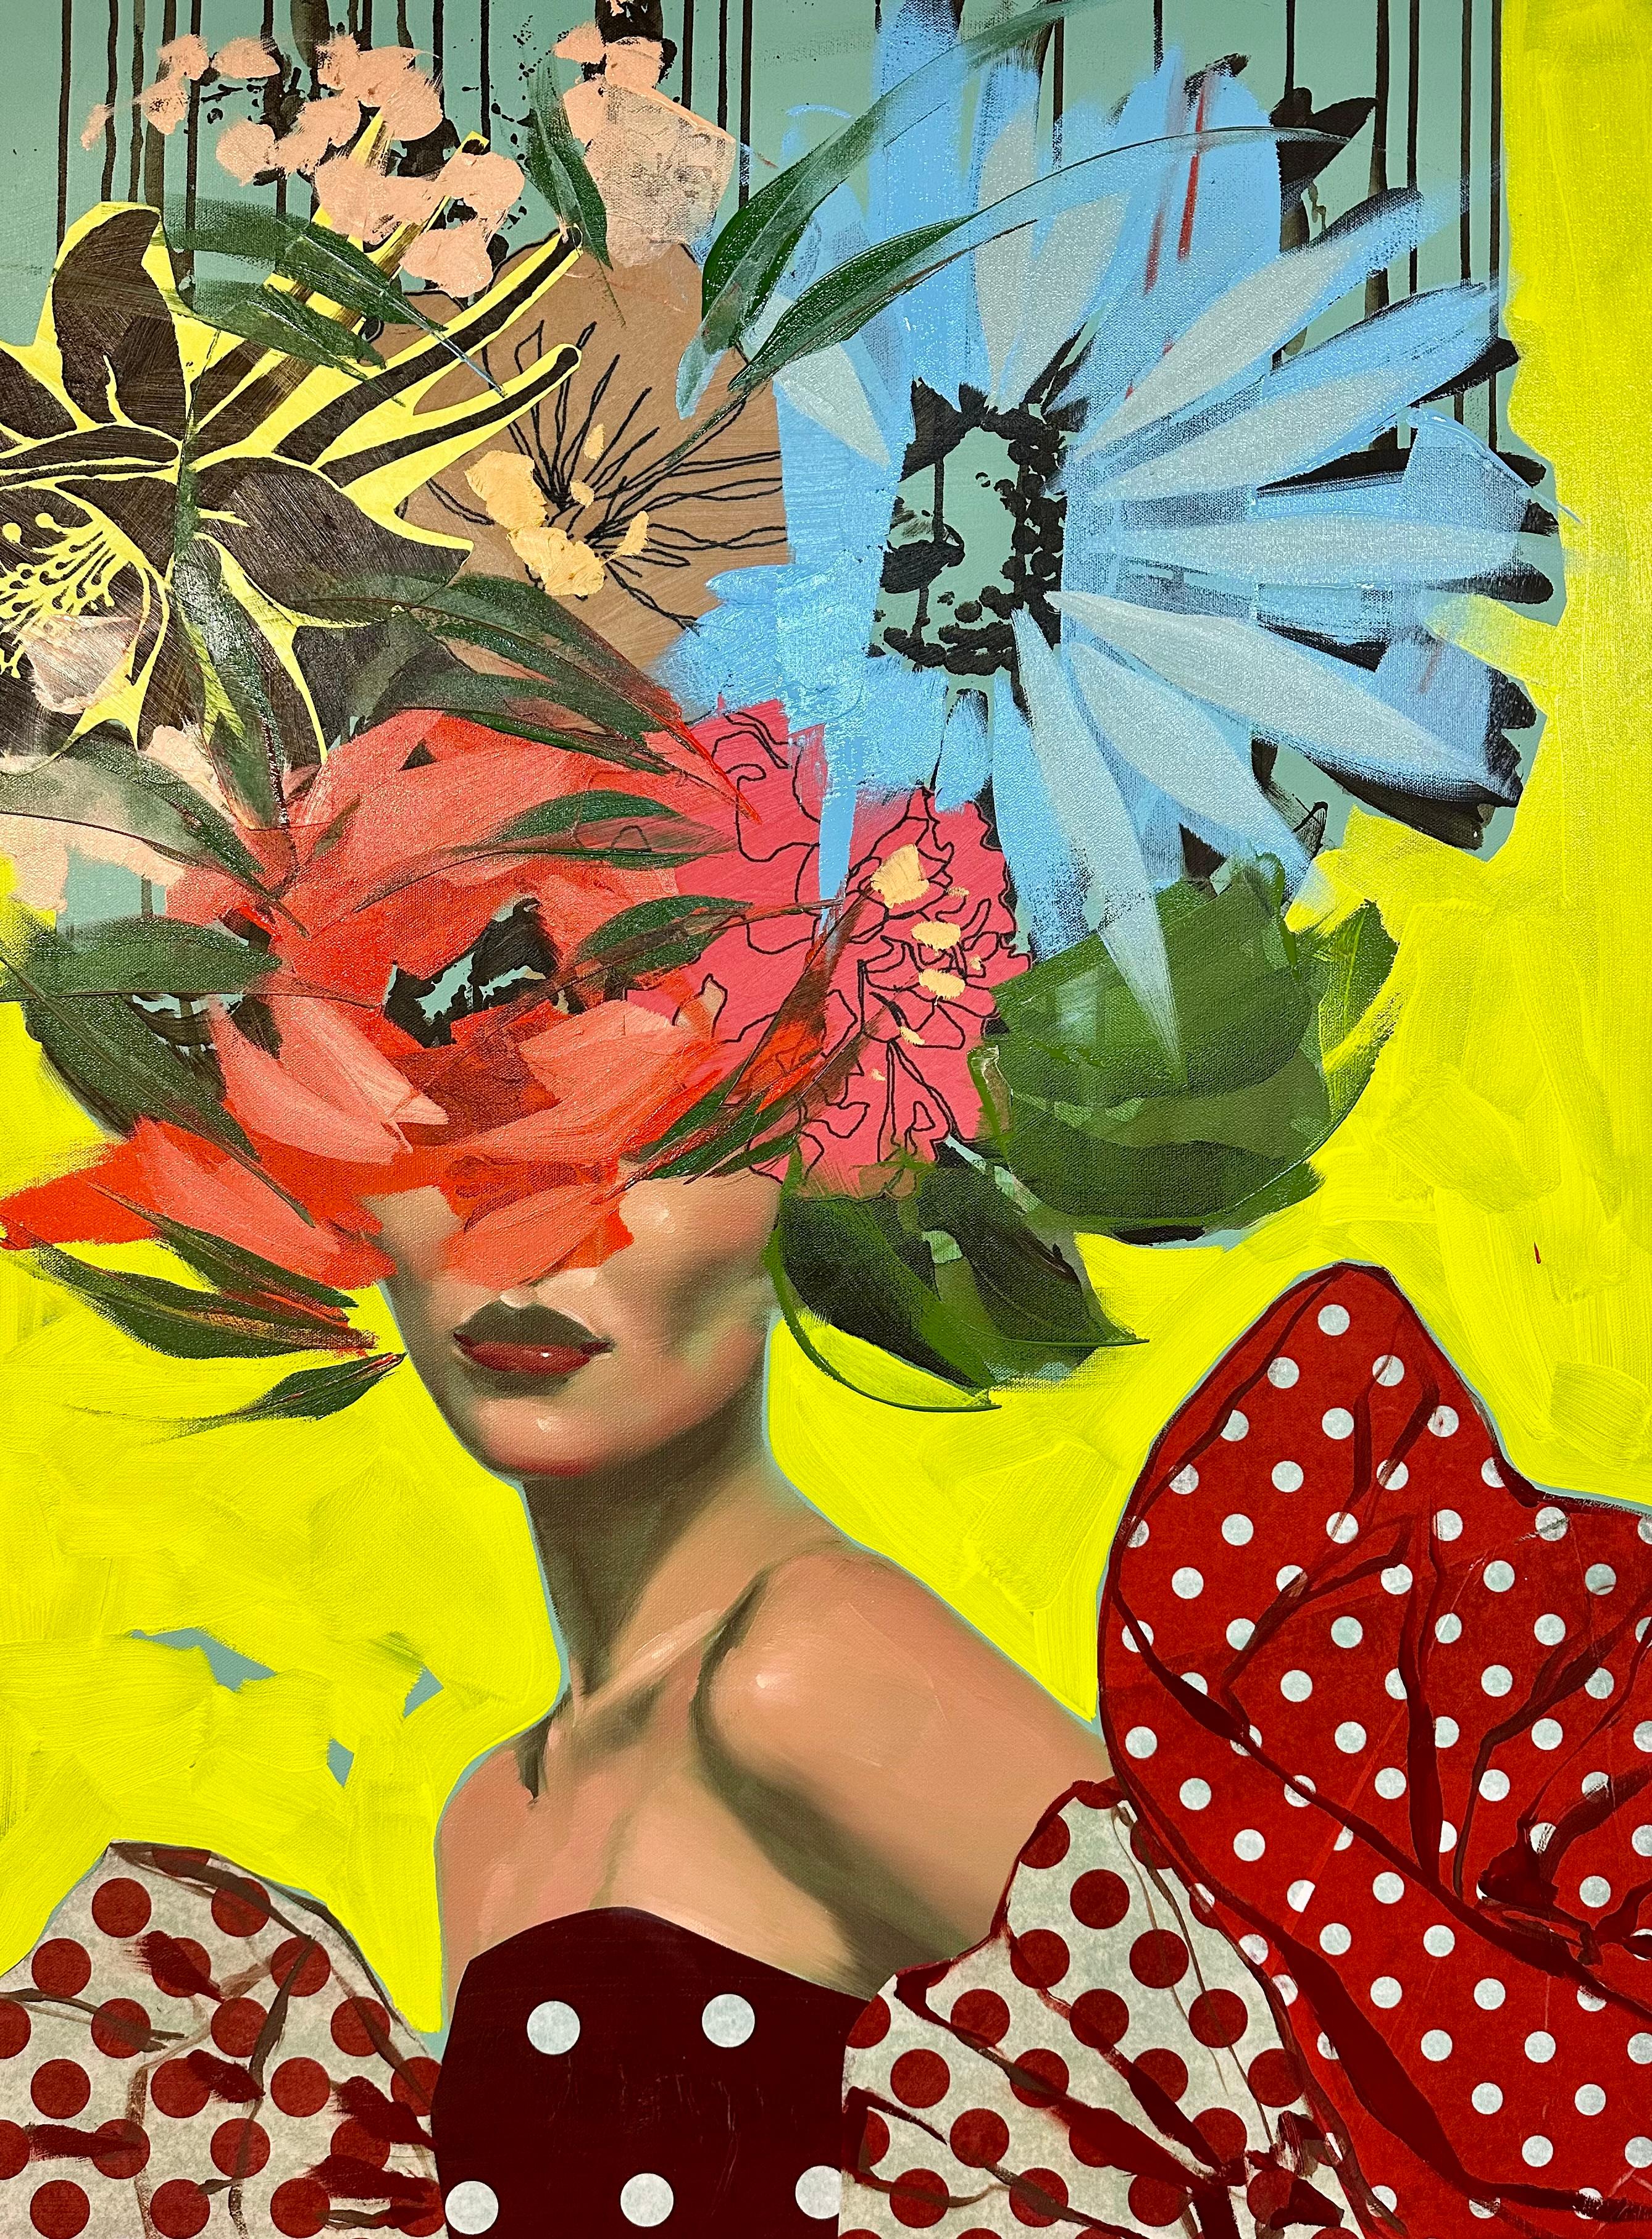 ANNA KINCAIDE
"Stay Forever Free"
Huile et techniques mixtes sur toile
40 x 30 pouces

Communiquant l'émotion et la narration avec l'aide limitée des expressions faciales de son personnage, Anna Kincaide crée des cascades de fleurs qui recouvrent